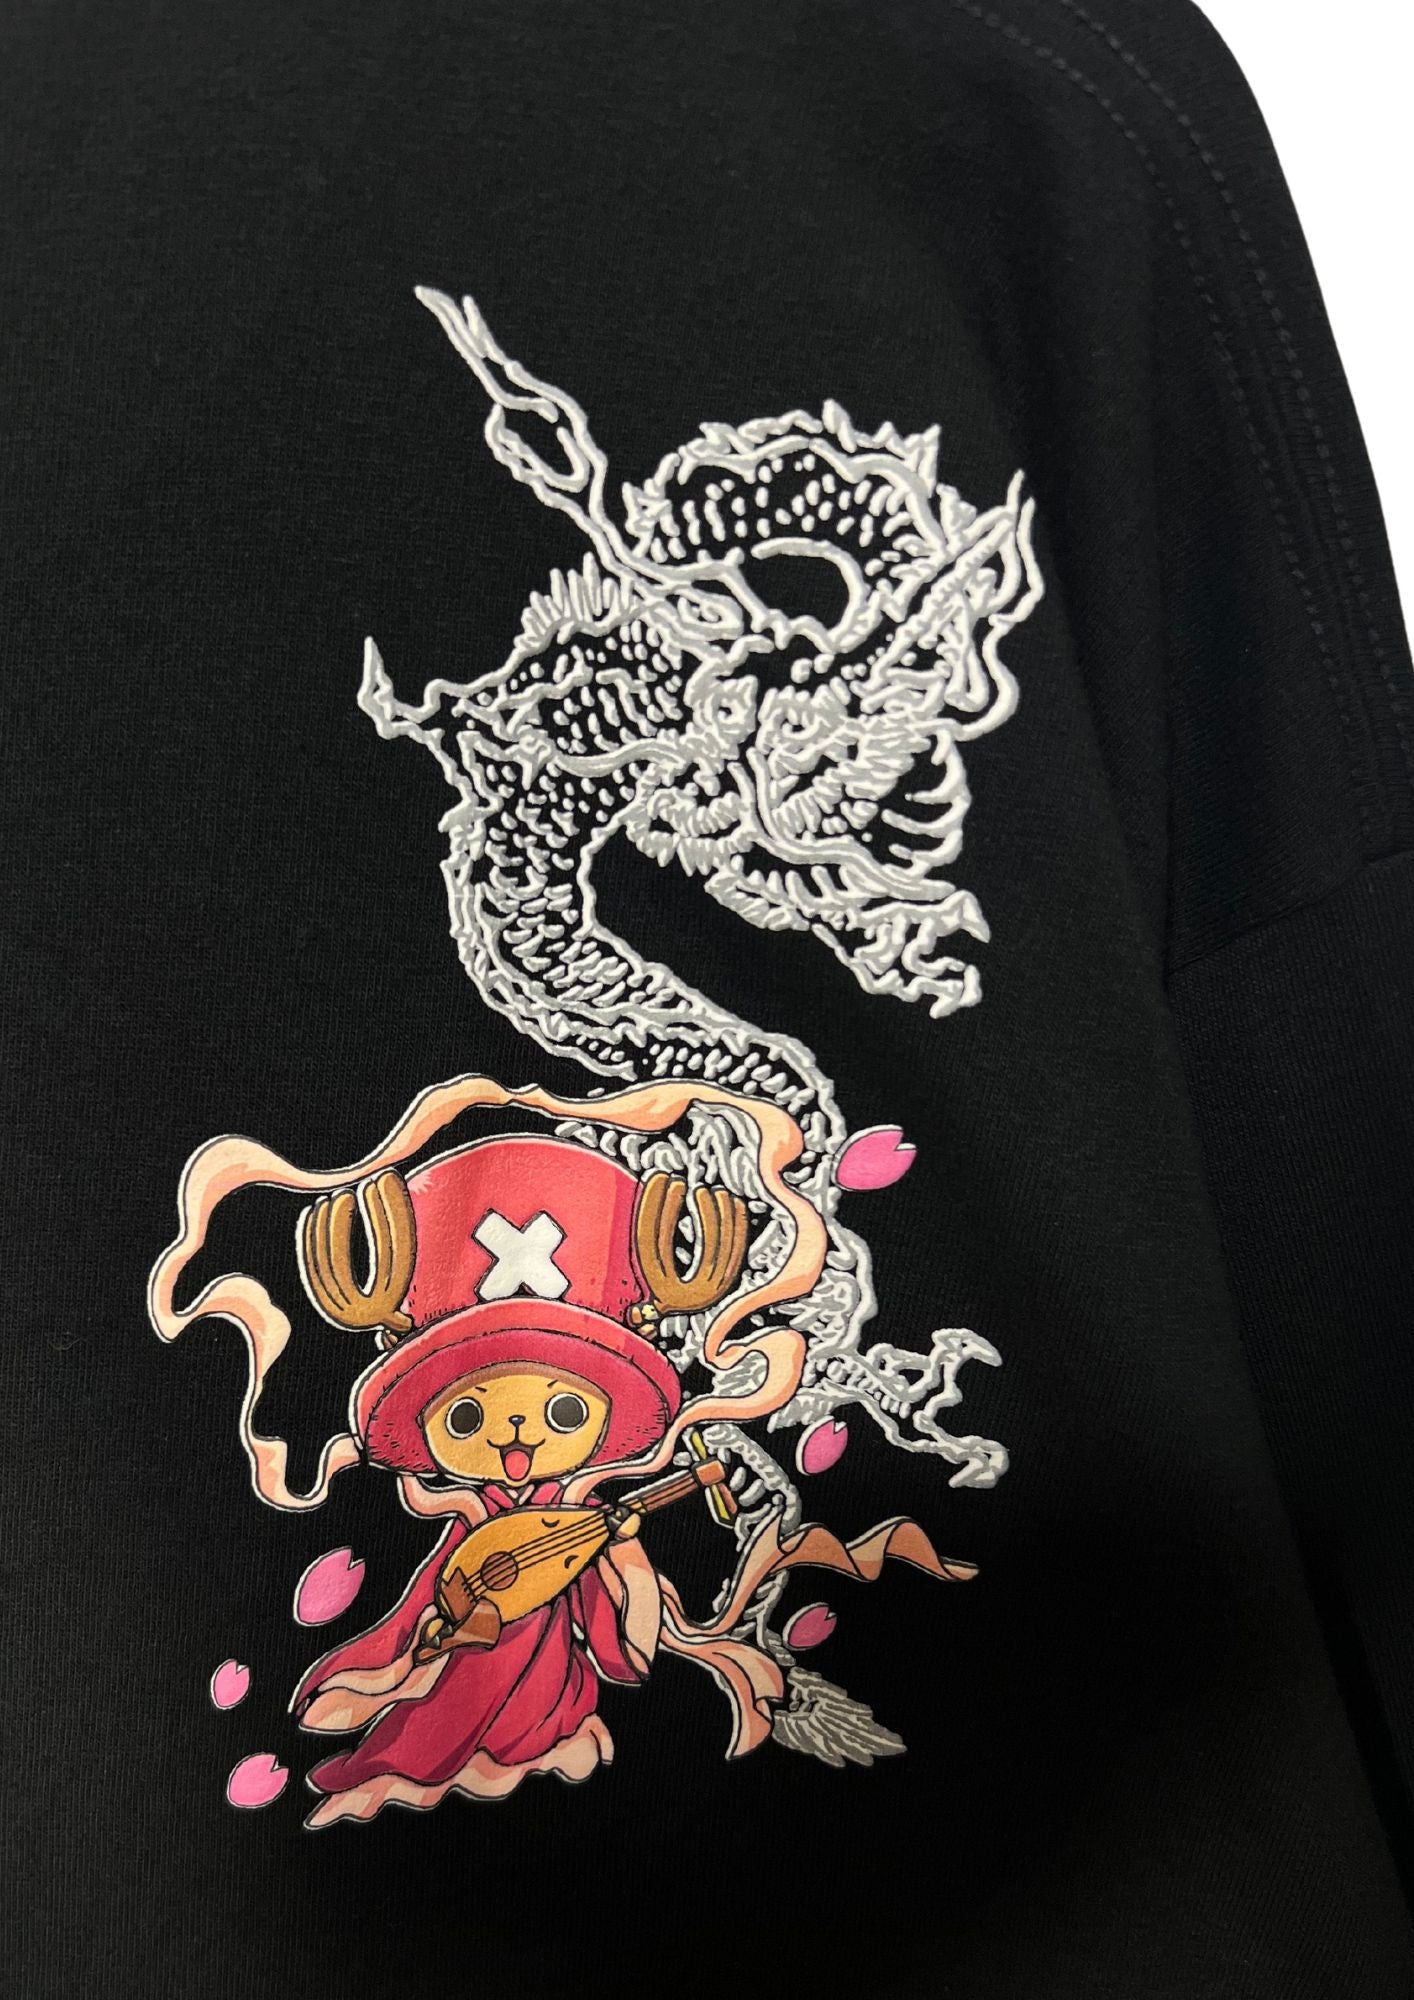 2010 One Piece x Mukashi Mukashi Chopper T-shirt